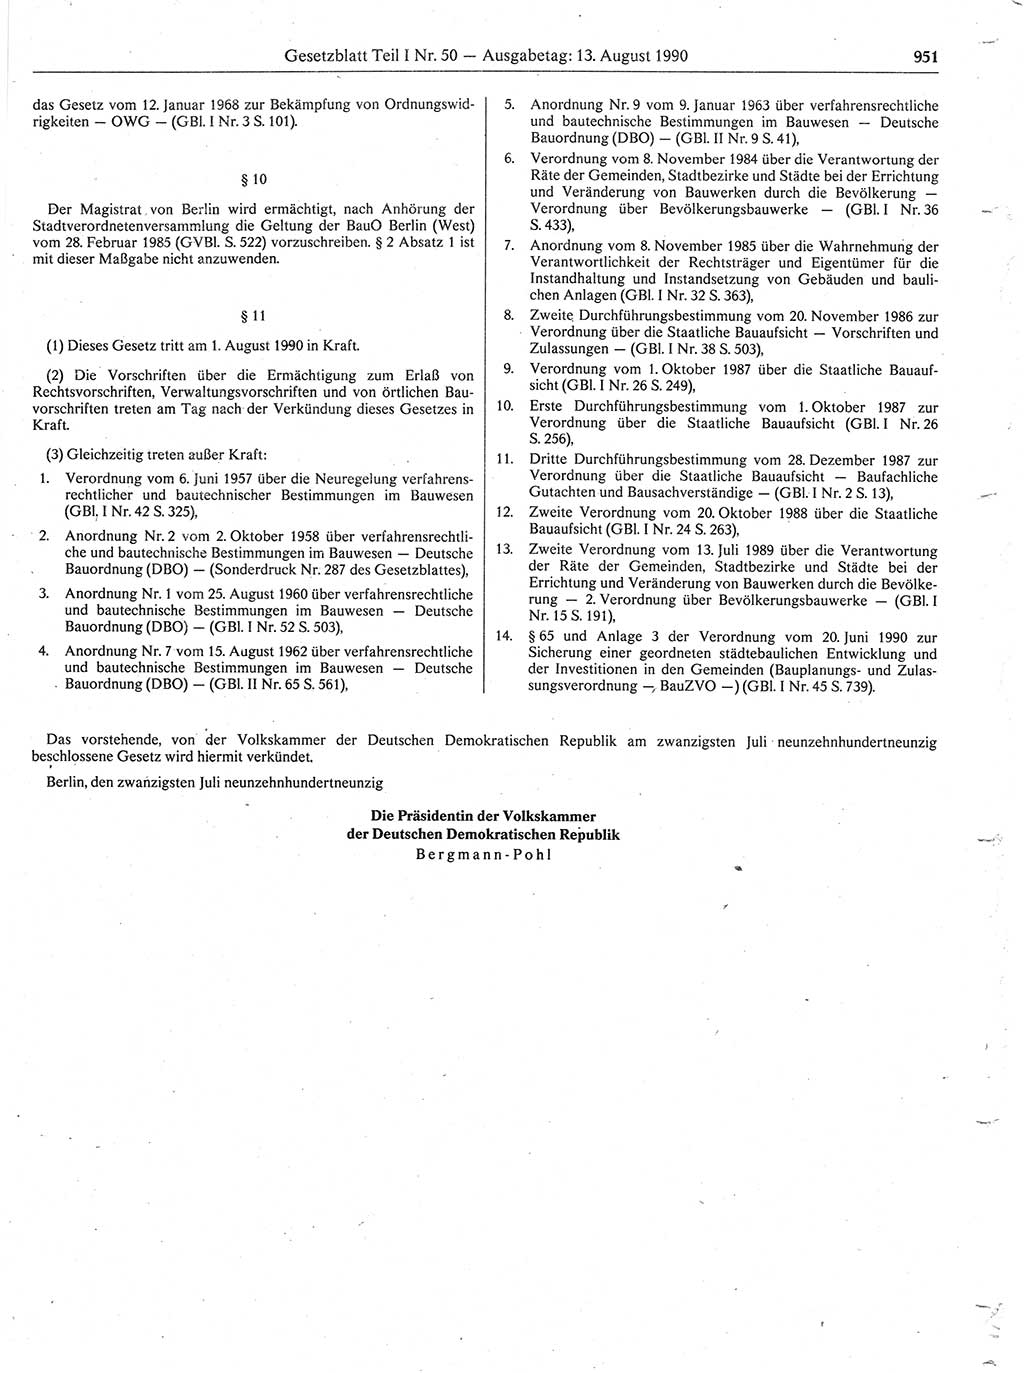 Gesetzblatt (GBl.) der Deutschen Demokratischen Republik (DDR) Teil Ⅰ 1990, Seite 951 (GBl. DDR Ⅰ 1990, S. 951)